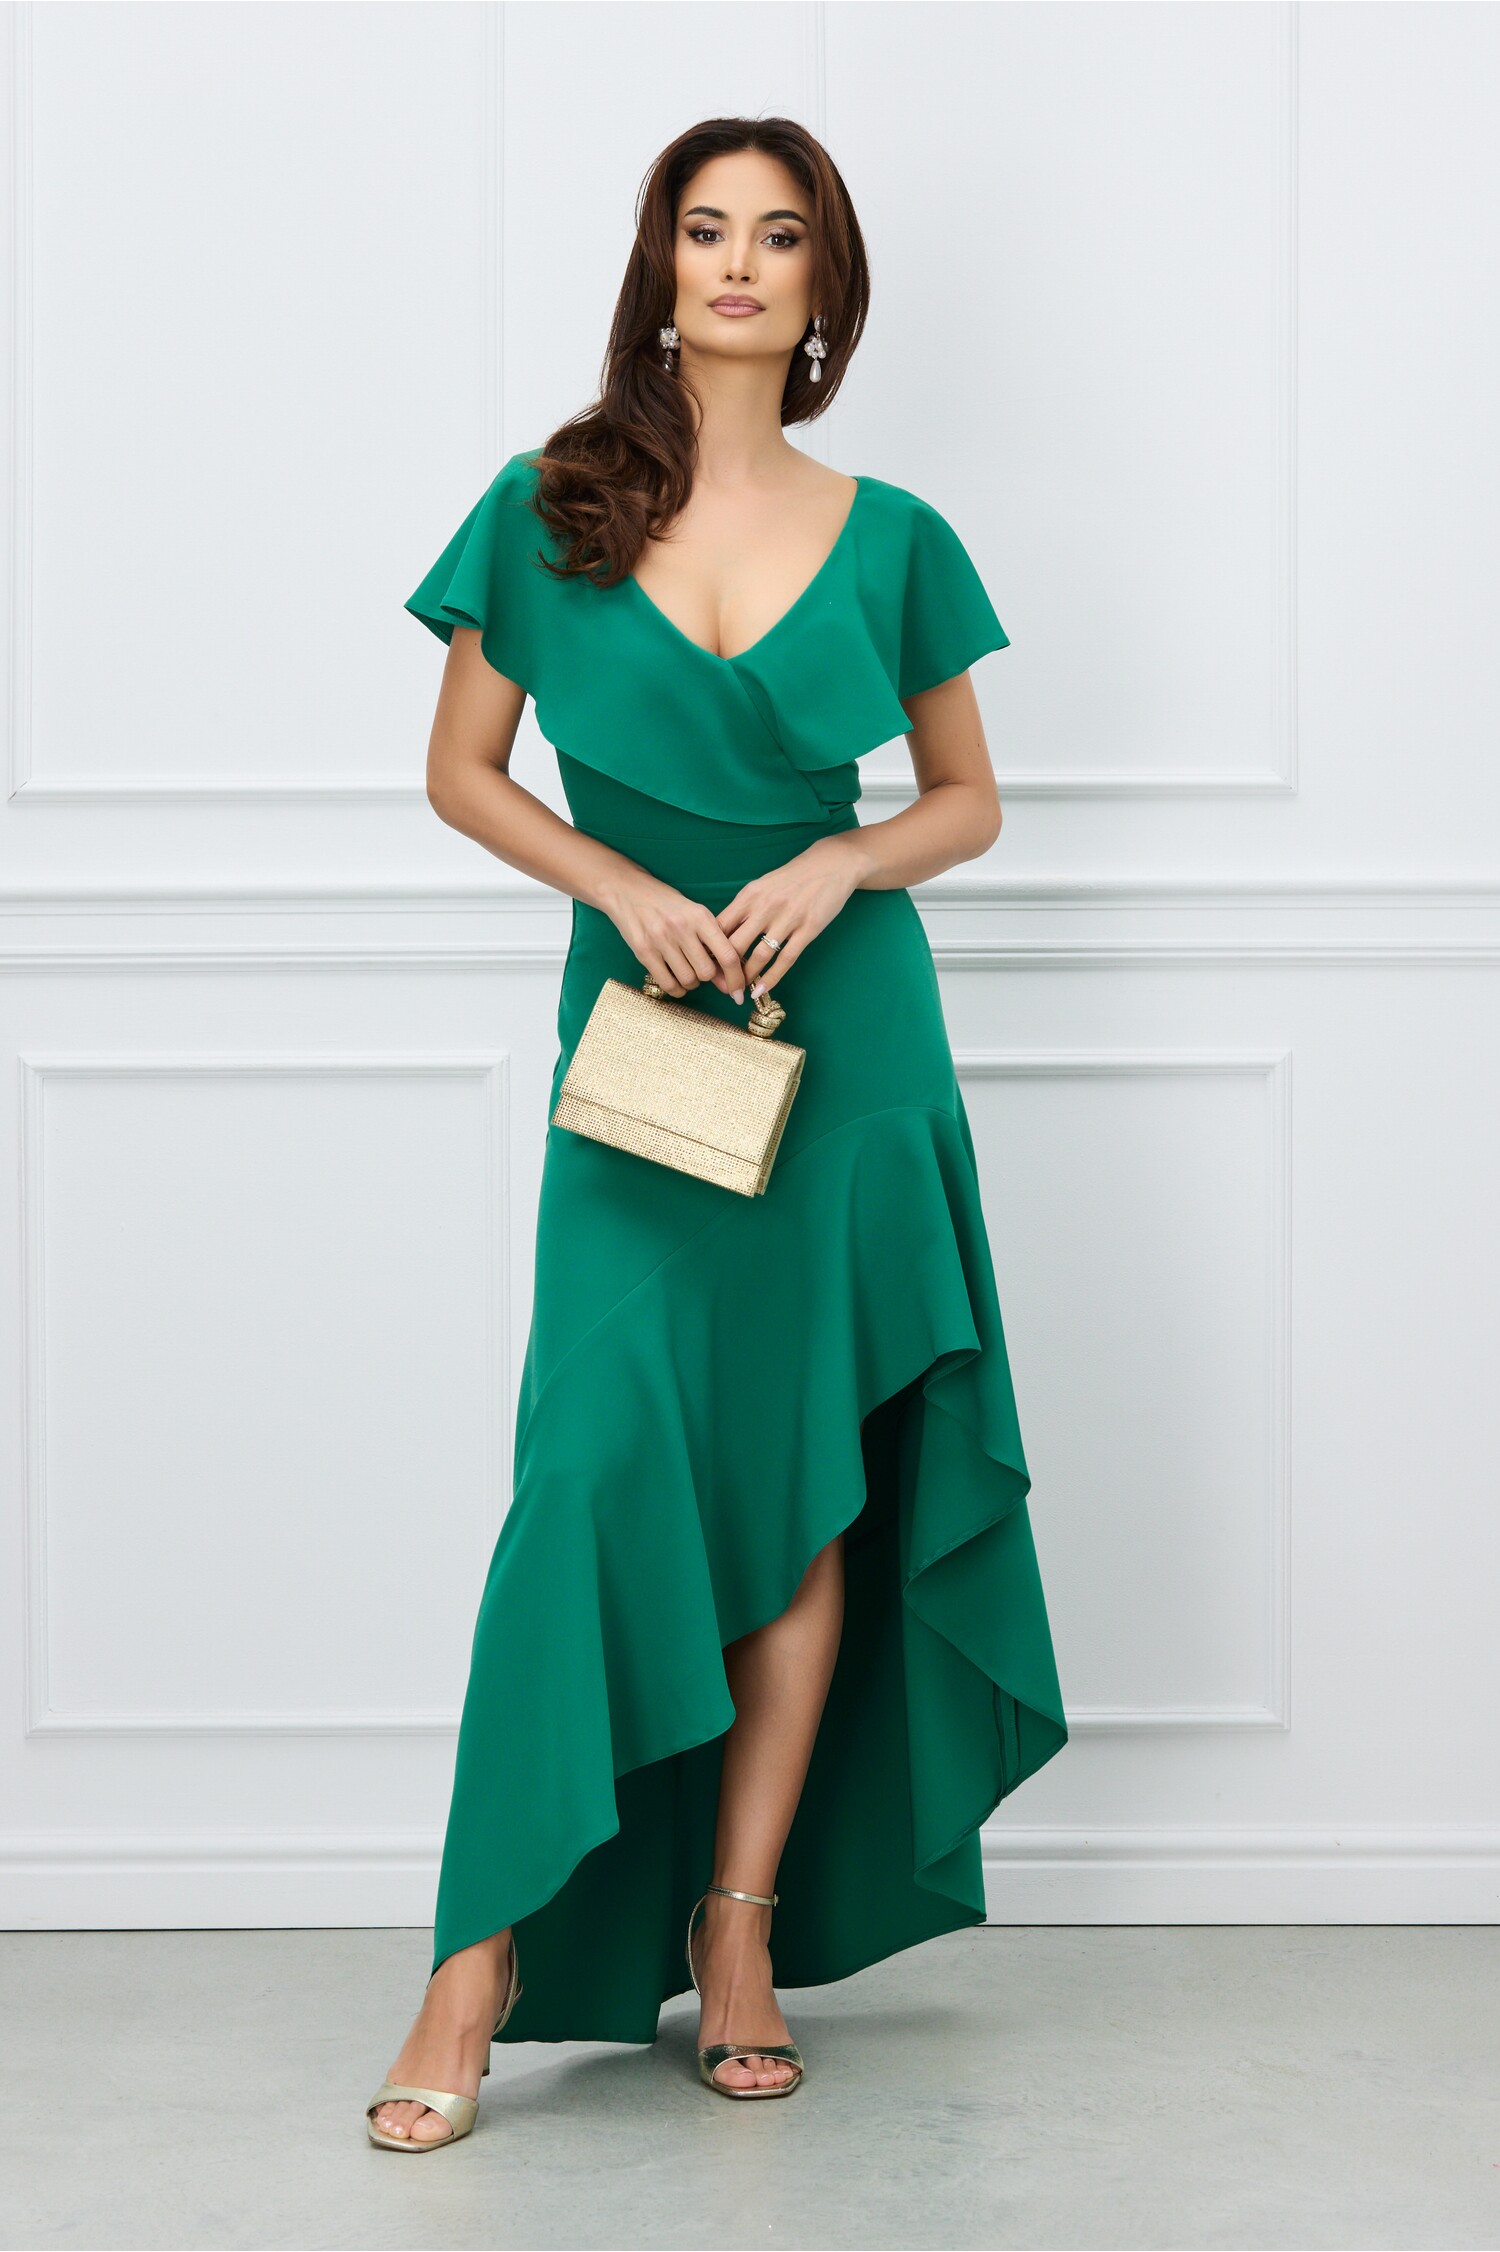 Rochie DY Fashion verde cu lungime asimetrica